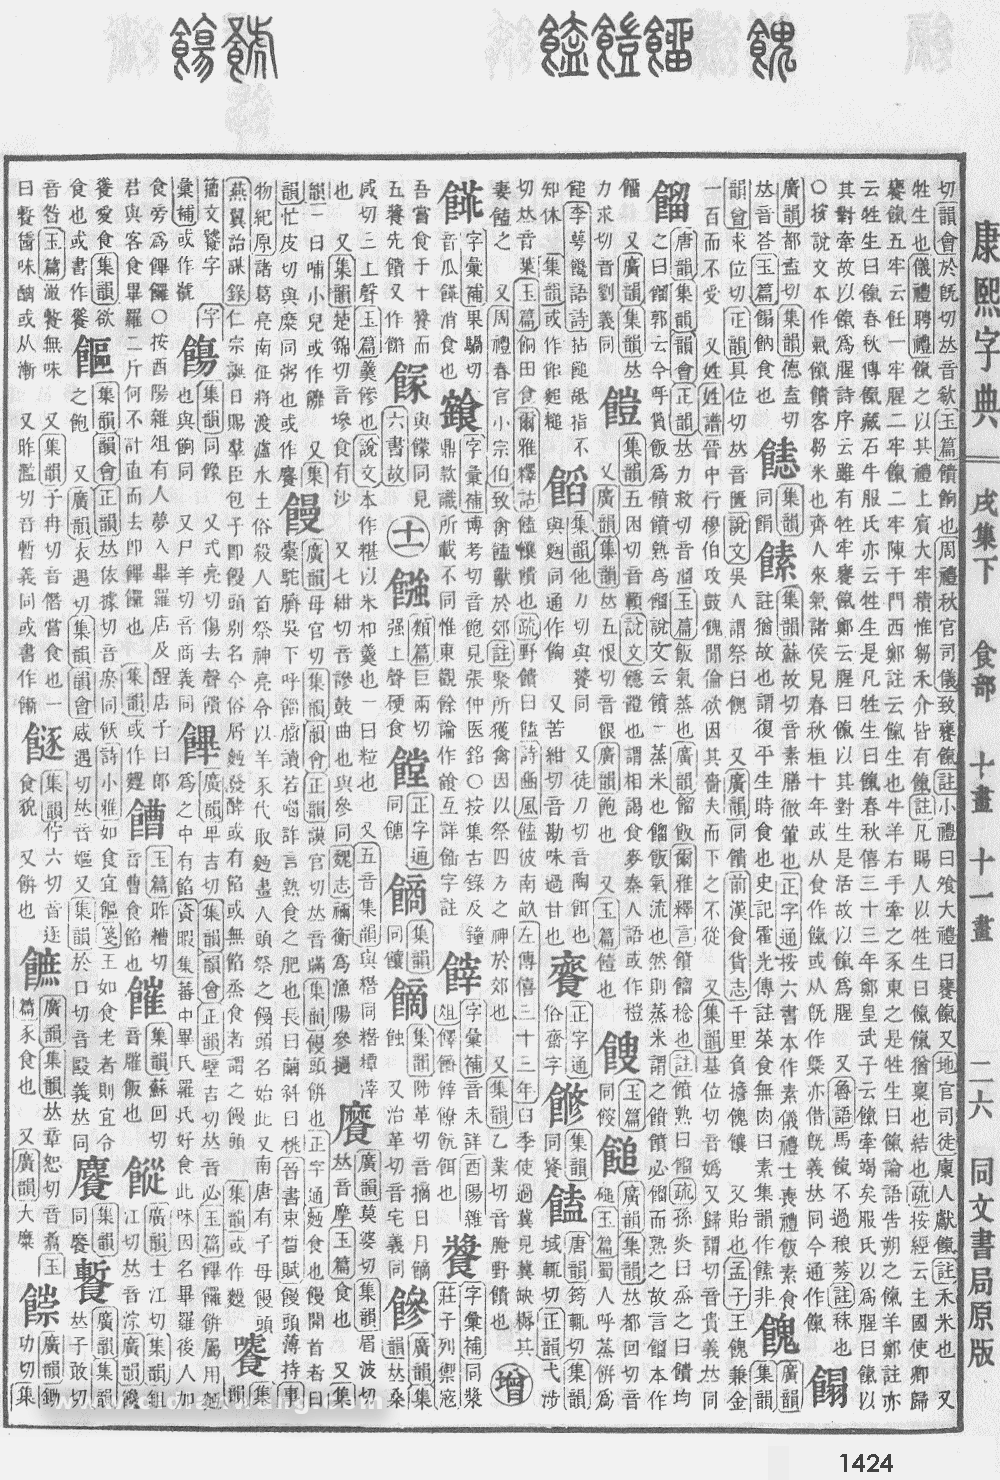 康熙字典掃描版第1424頁